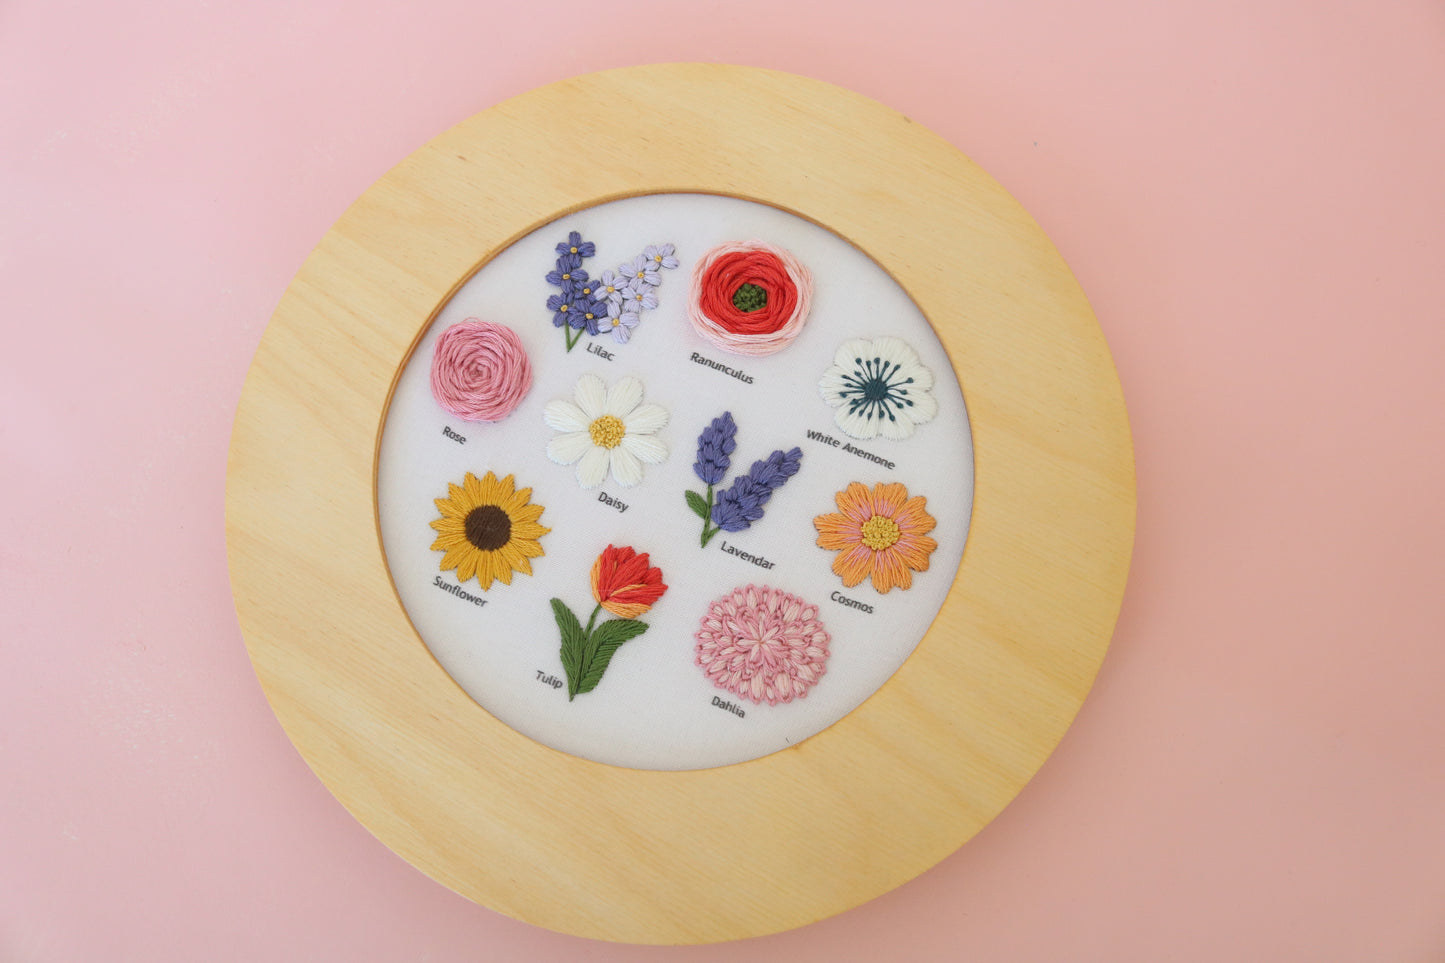 6" Flower Chart Embroidery Kit - Confident Beginner